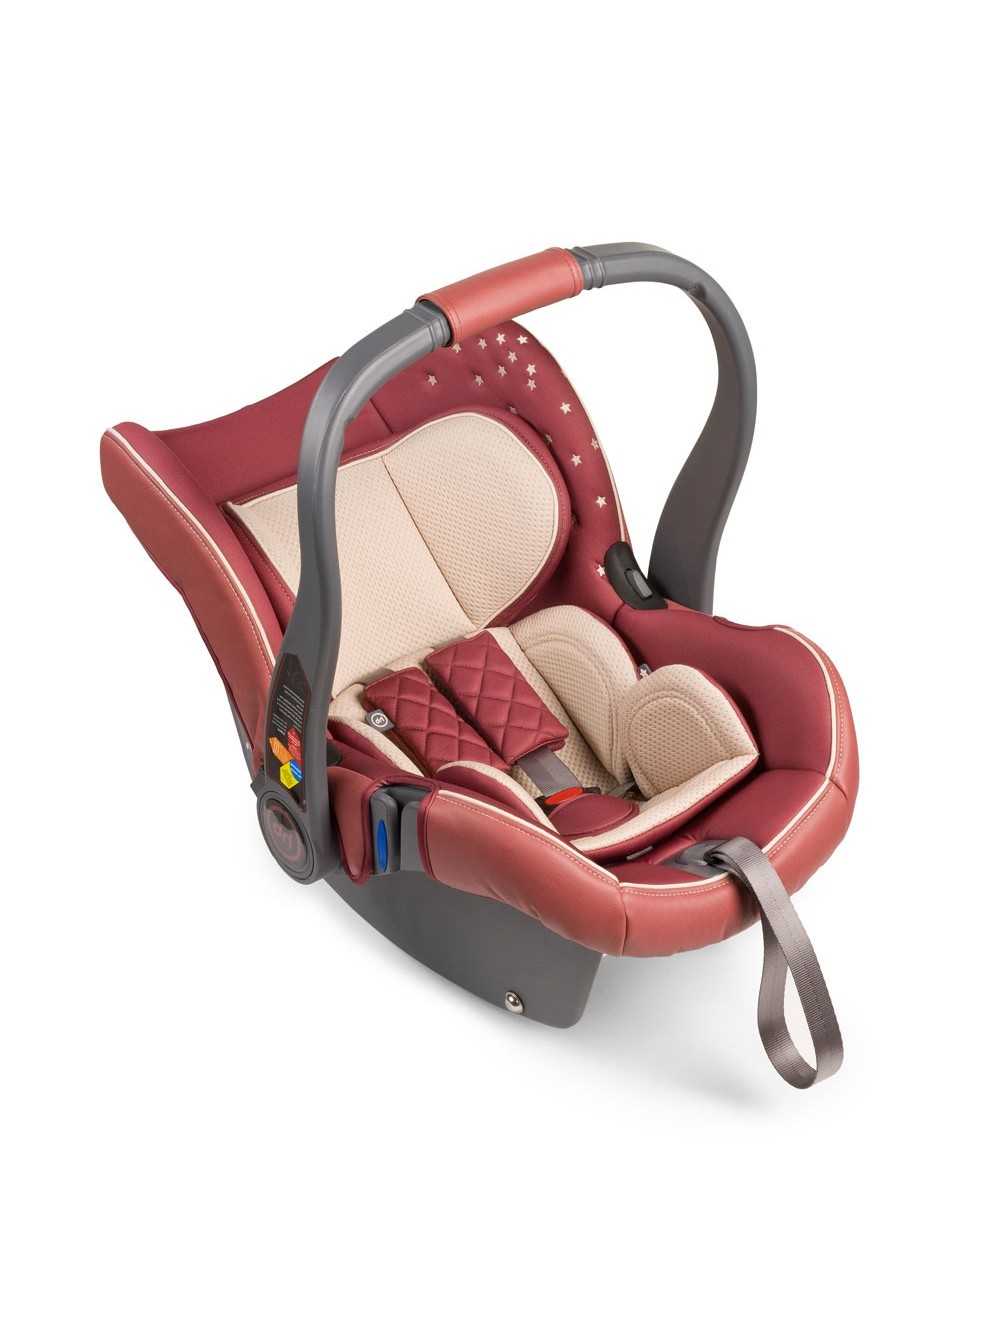 Автолюльки happy baby: особенности моделей skyler 0-13 кг, gelios v2 и madison, варианты для новорожденных